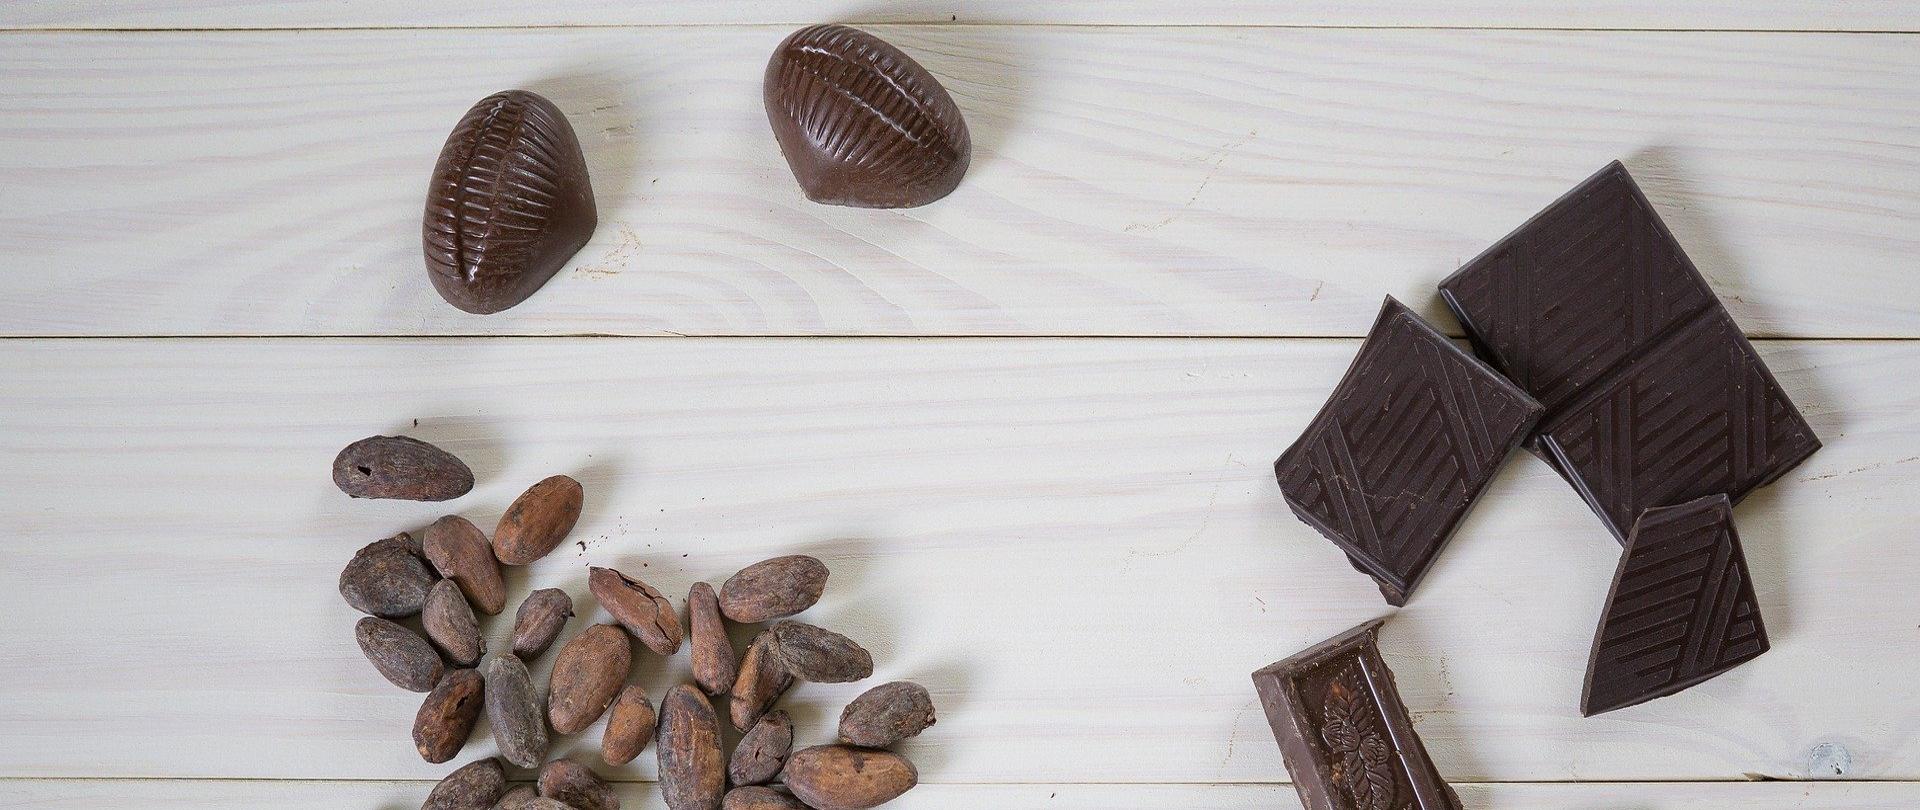 Na zdjęciu znajdują się dwie czekoladki, kilka połamanych kawałków czekolady oraz ziarna kakaowca.